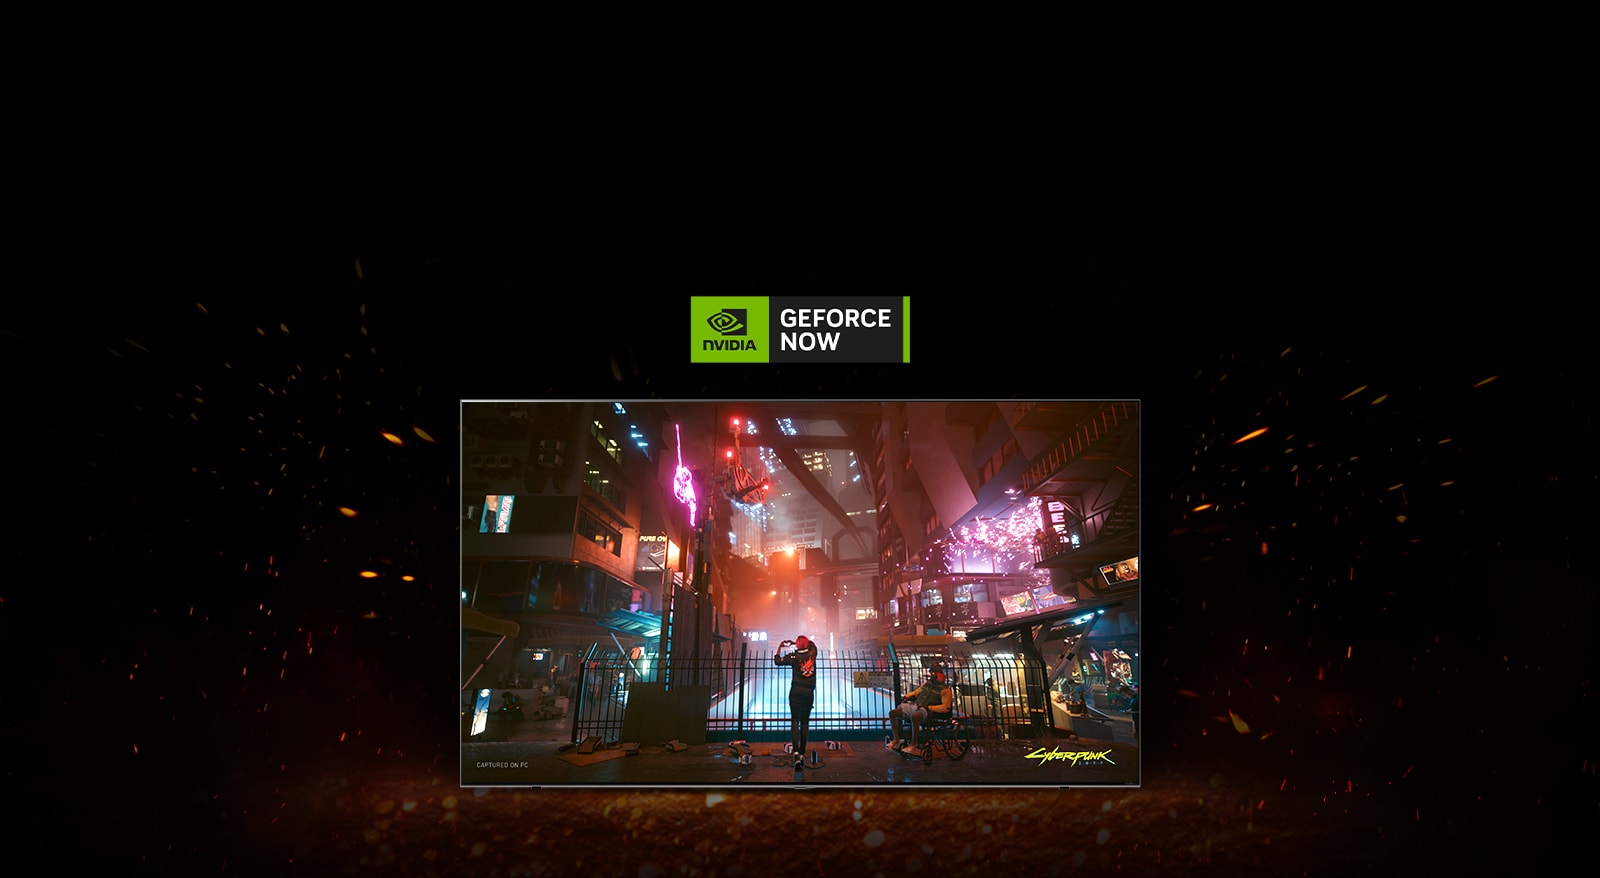 เปลวไฟลุกโชนรอบๆ ทีวี และคุณจะเห็นหน้าจอเกมของ Cyberpunk อยู่ข้างใน มีโลโก้ Geforce now ที่ด้านบนของทีวี